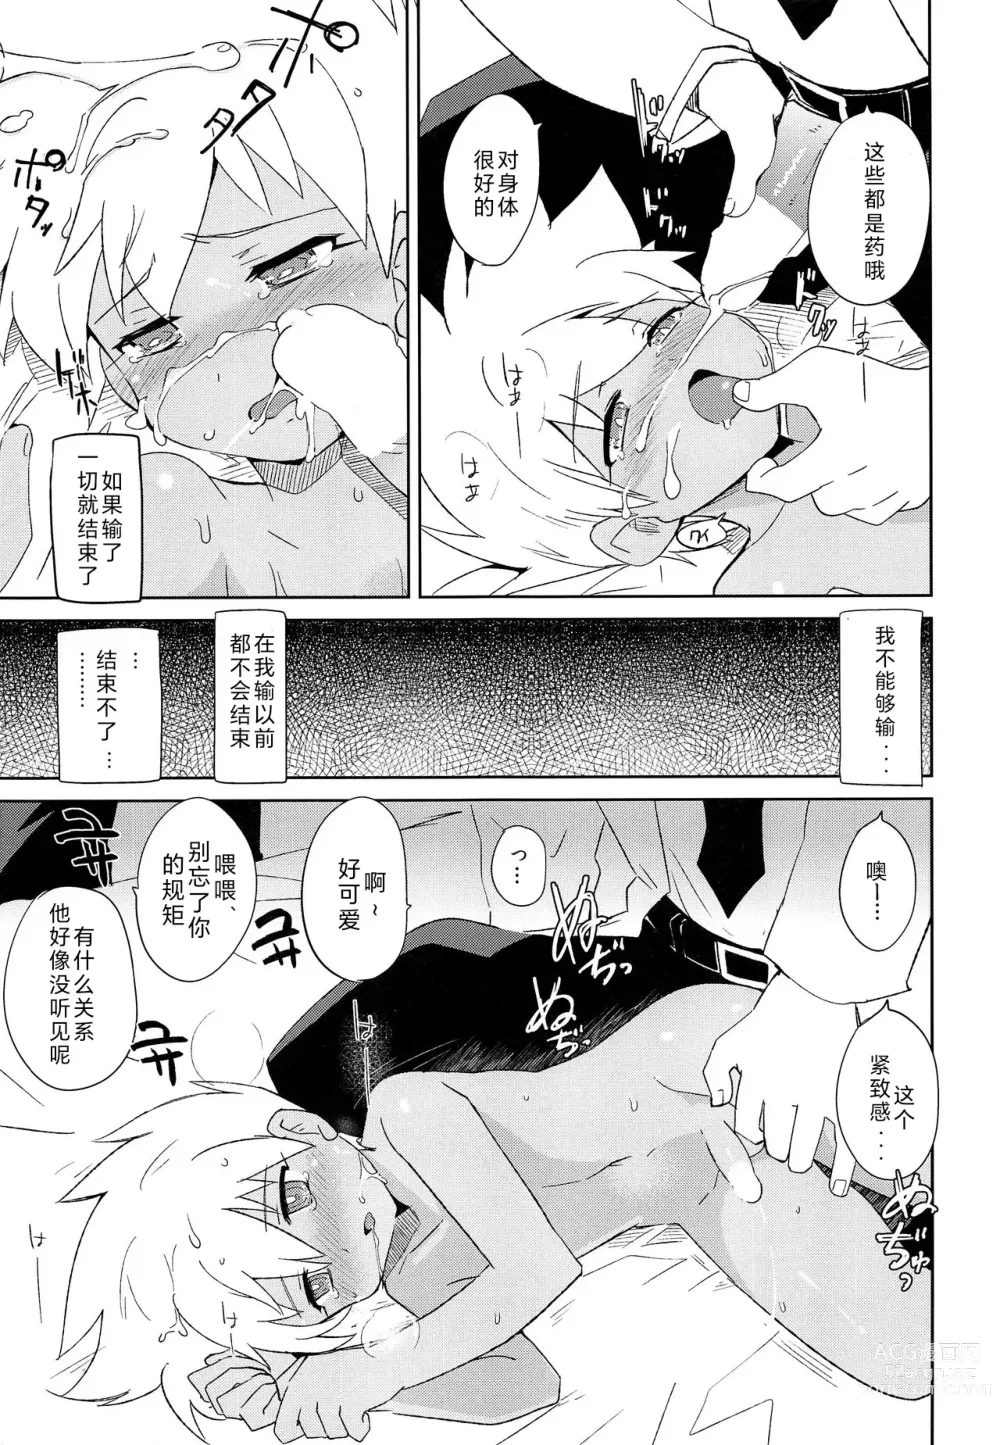 Page 24 of doujinshi Nukarumi